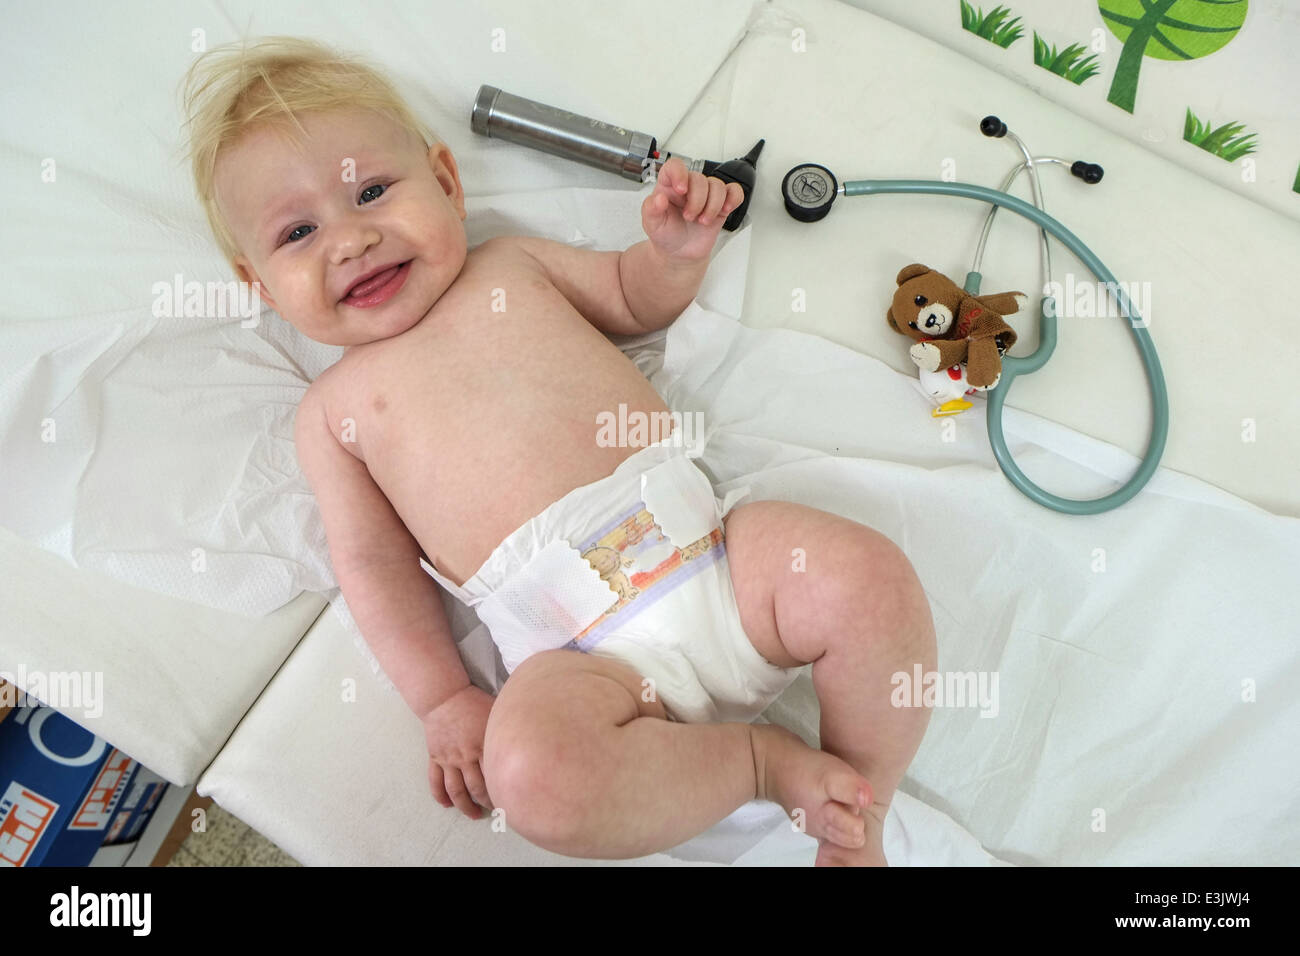 Un bébé heureux et détendu lors d'une visite de routine chez le médecin Banque D'Images